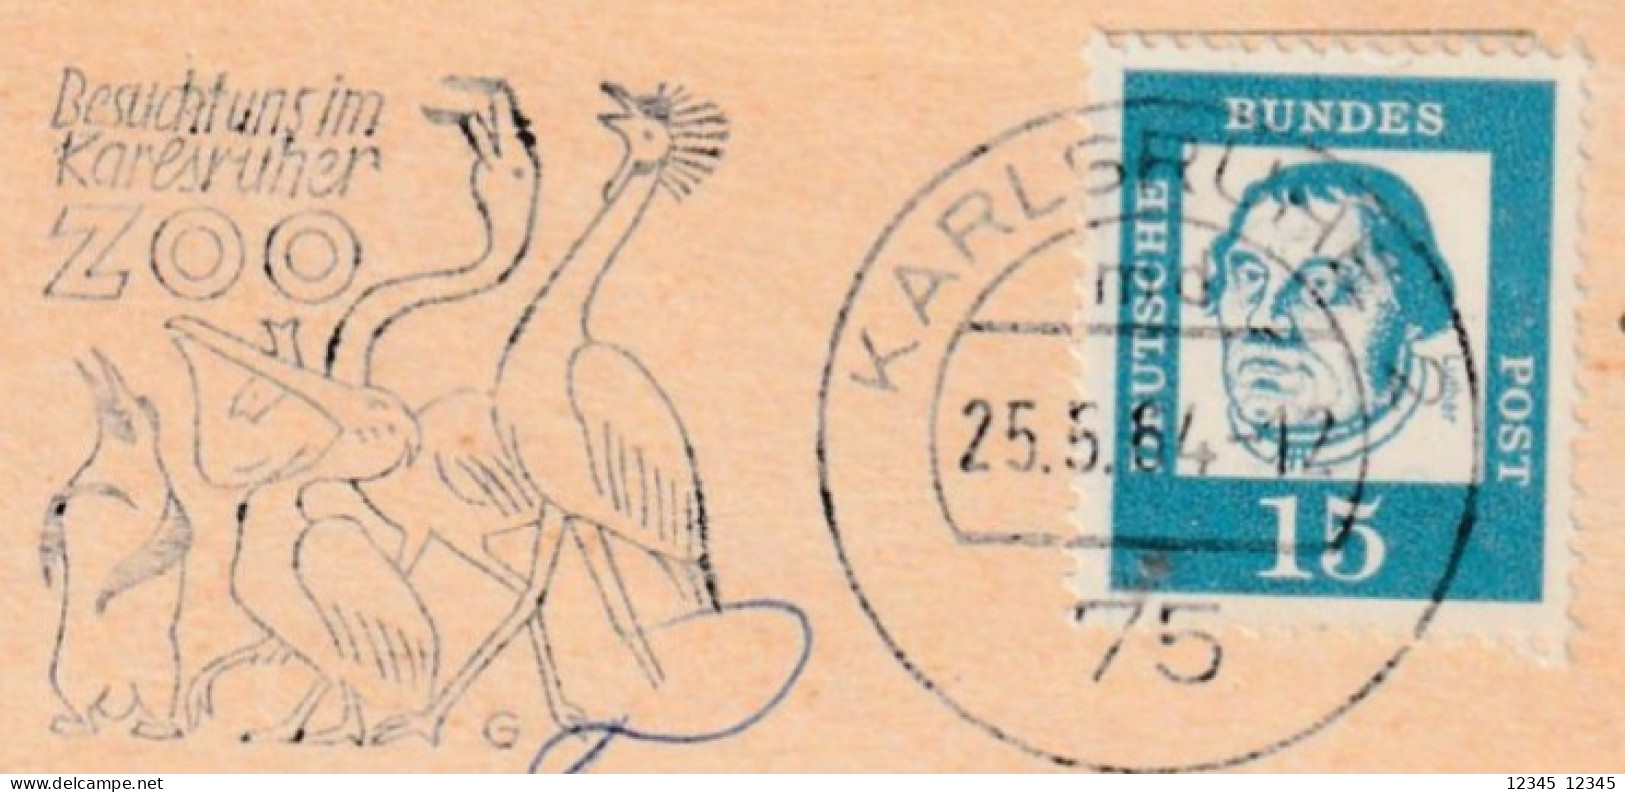 Duitsland 1964, Stamped Bird Motive (Besucht Uns Im Karlsruher Zoo) - Briefe U. Dokumente